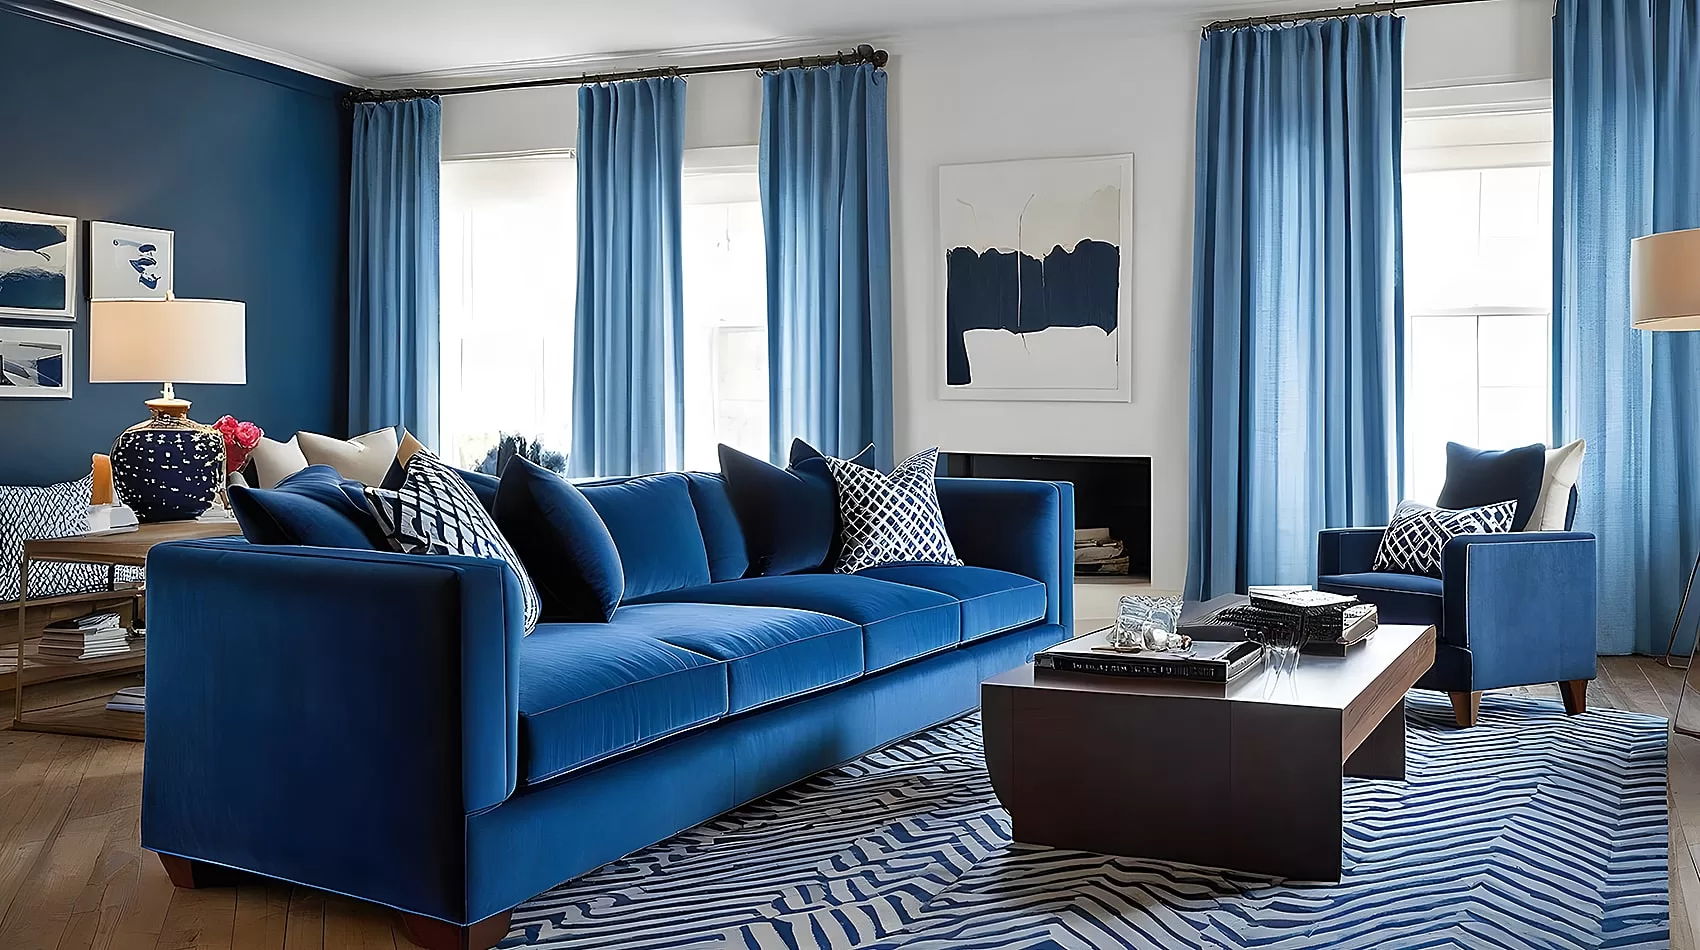 Sofa Living Room | Living Room Ideas Blue Sofa | Blue Couch in Living Room | Blue Couch Decor Ideas | Blue Couch for Living Room